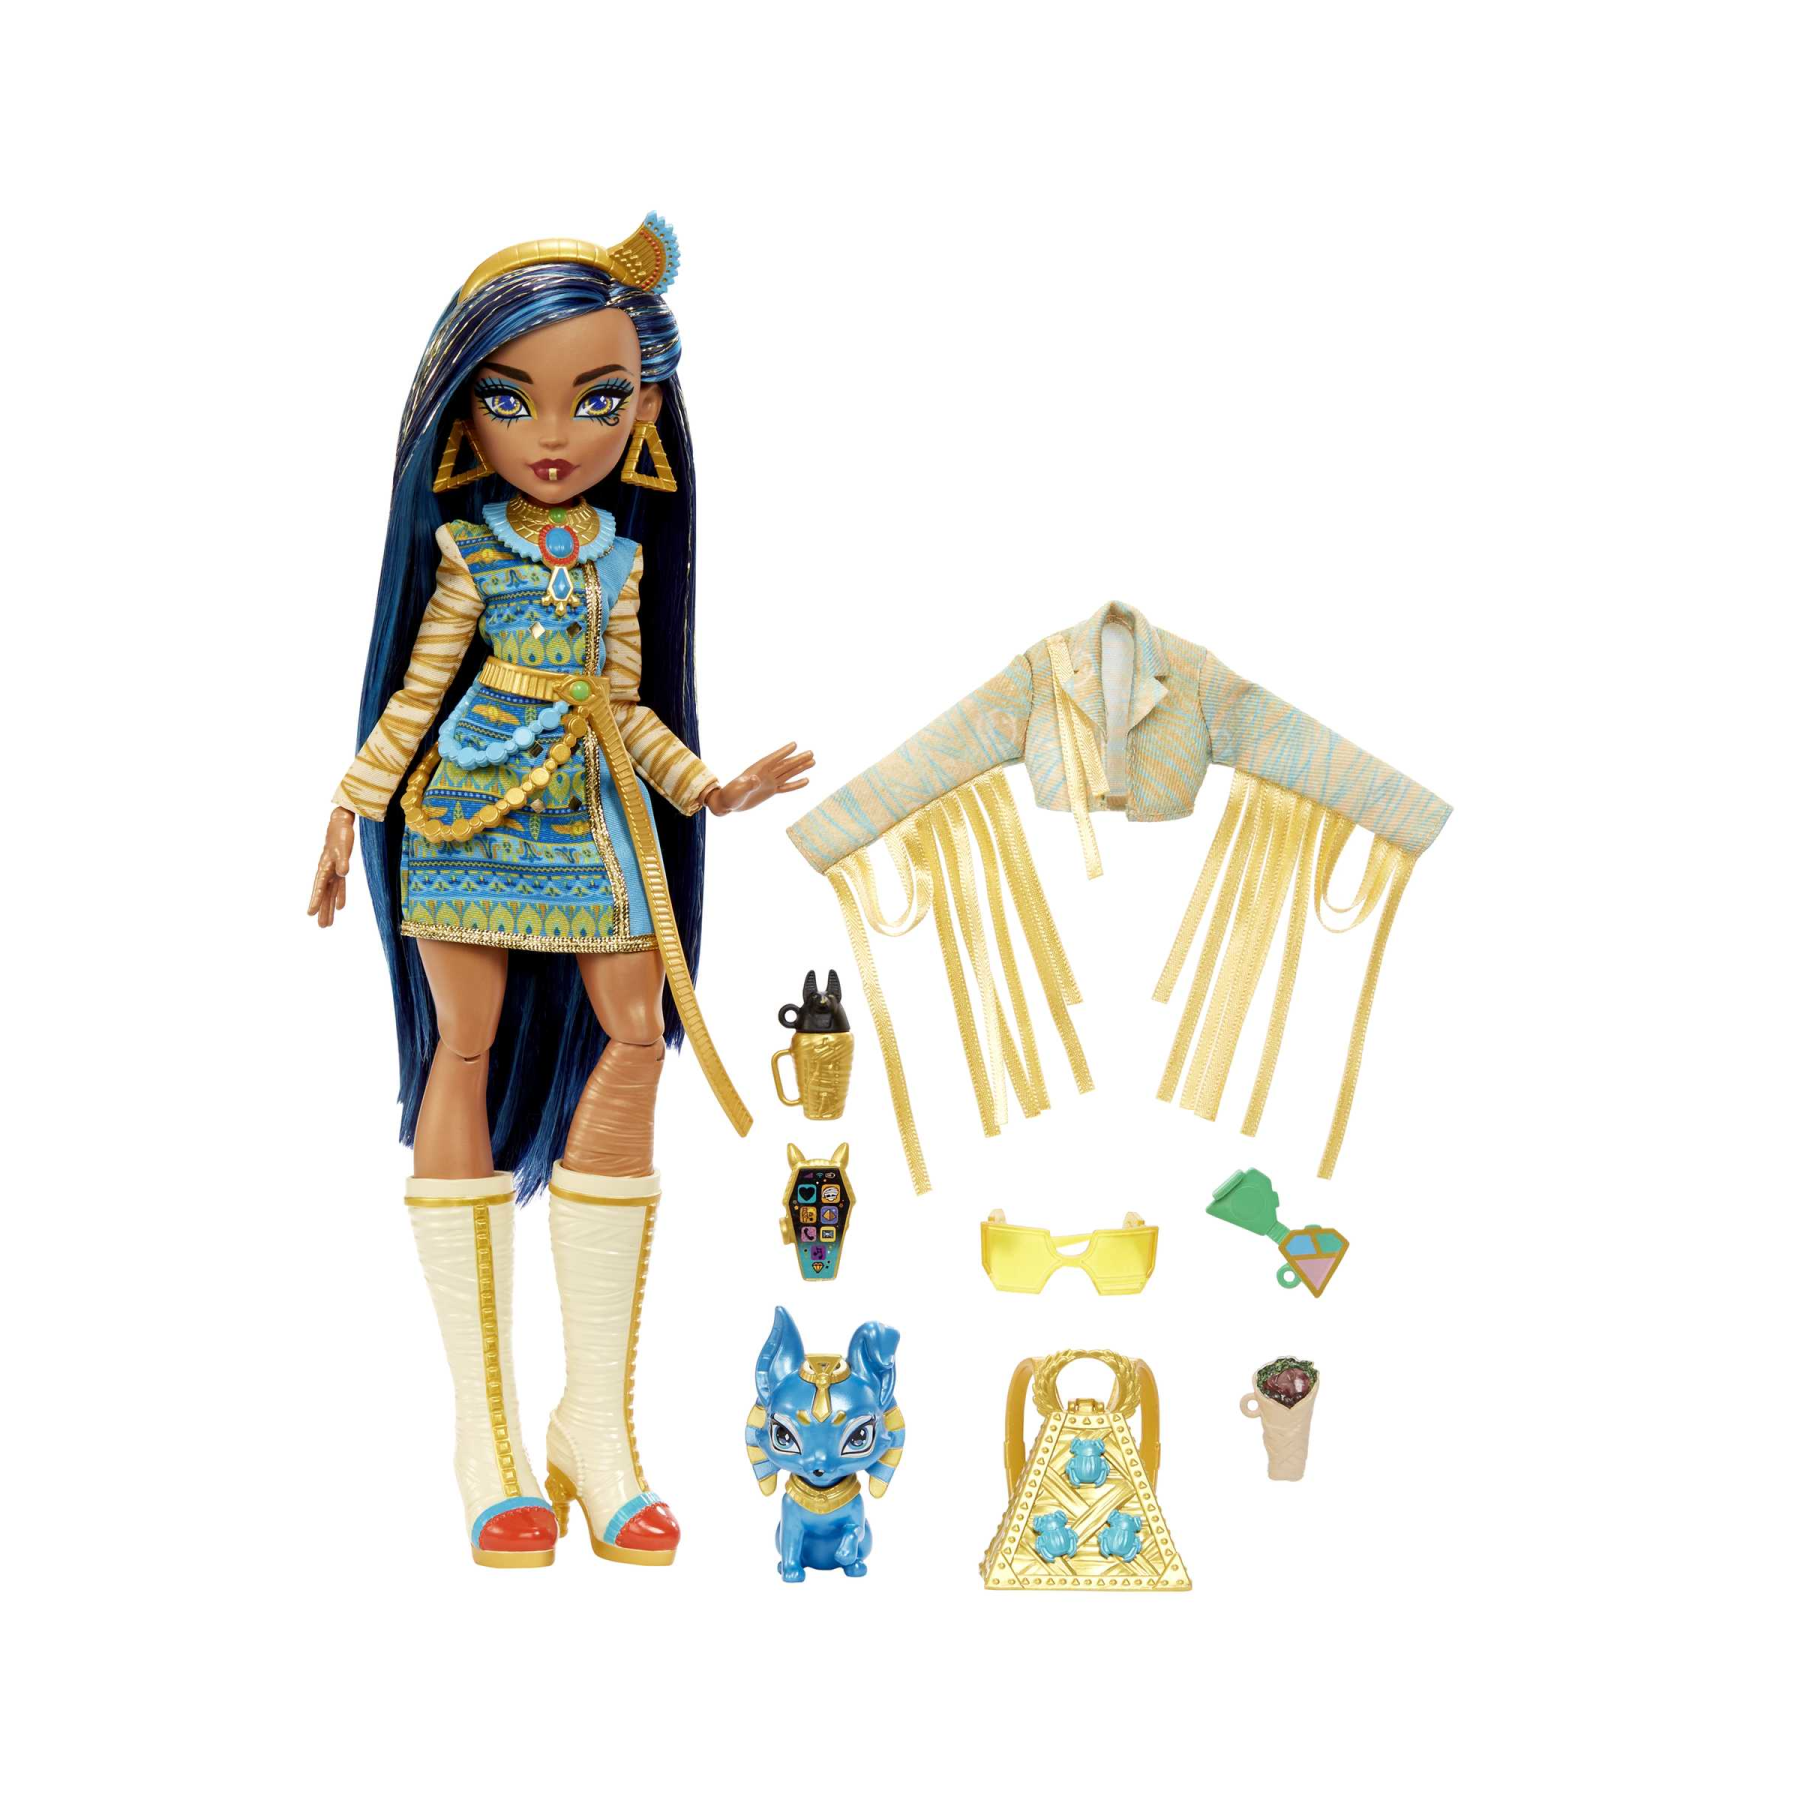 Monster high - cleo de nile, bambola snodata alla moda, dai capelli con ciocche blu, con accessori e cagnolino, giocattolo per bambini, 4+ anni, hhk54 - 